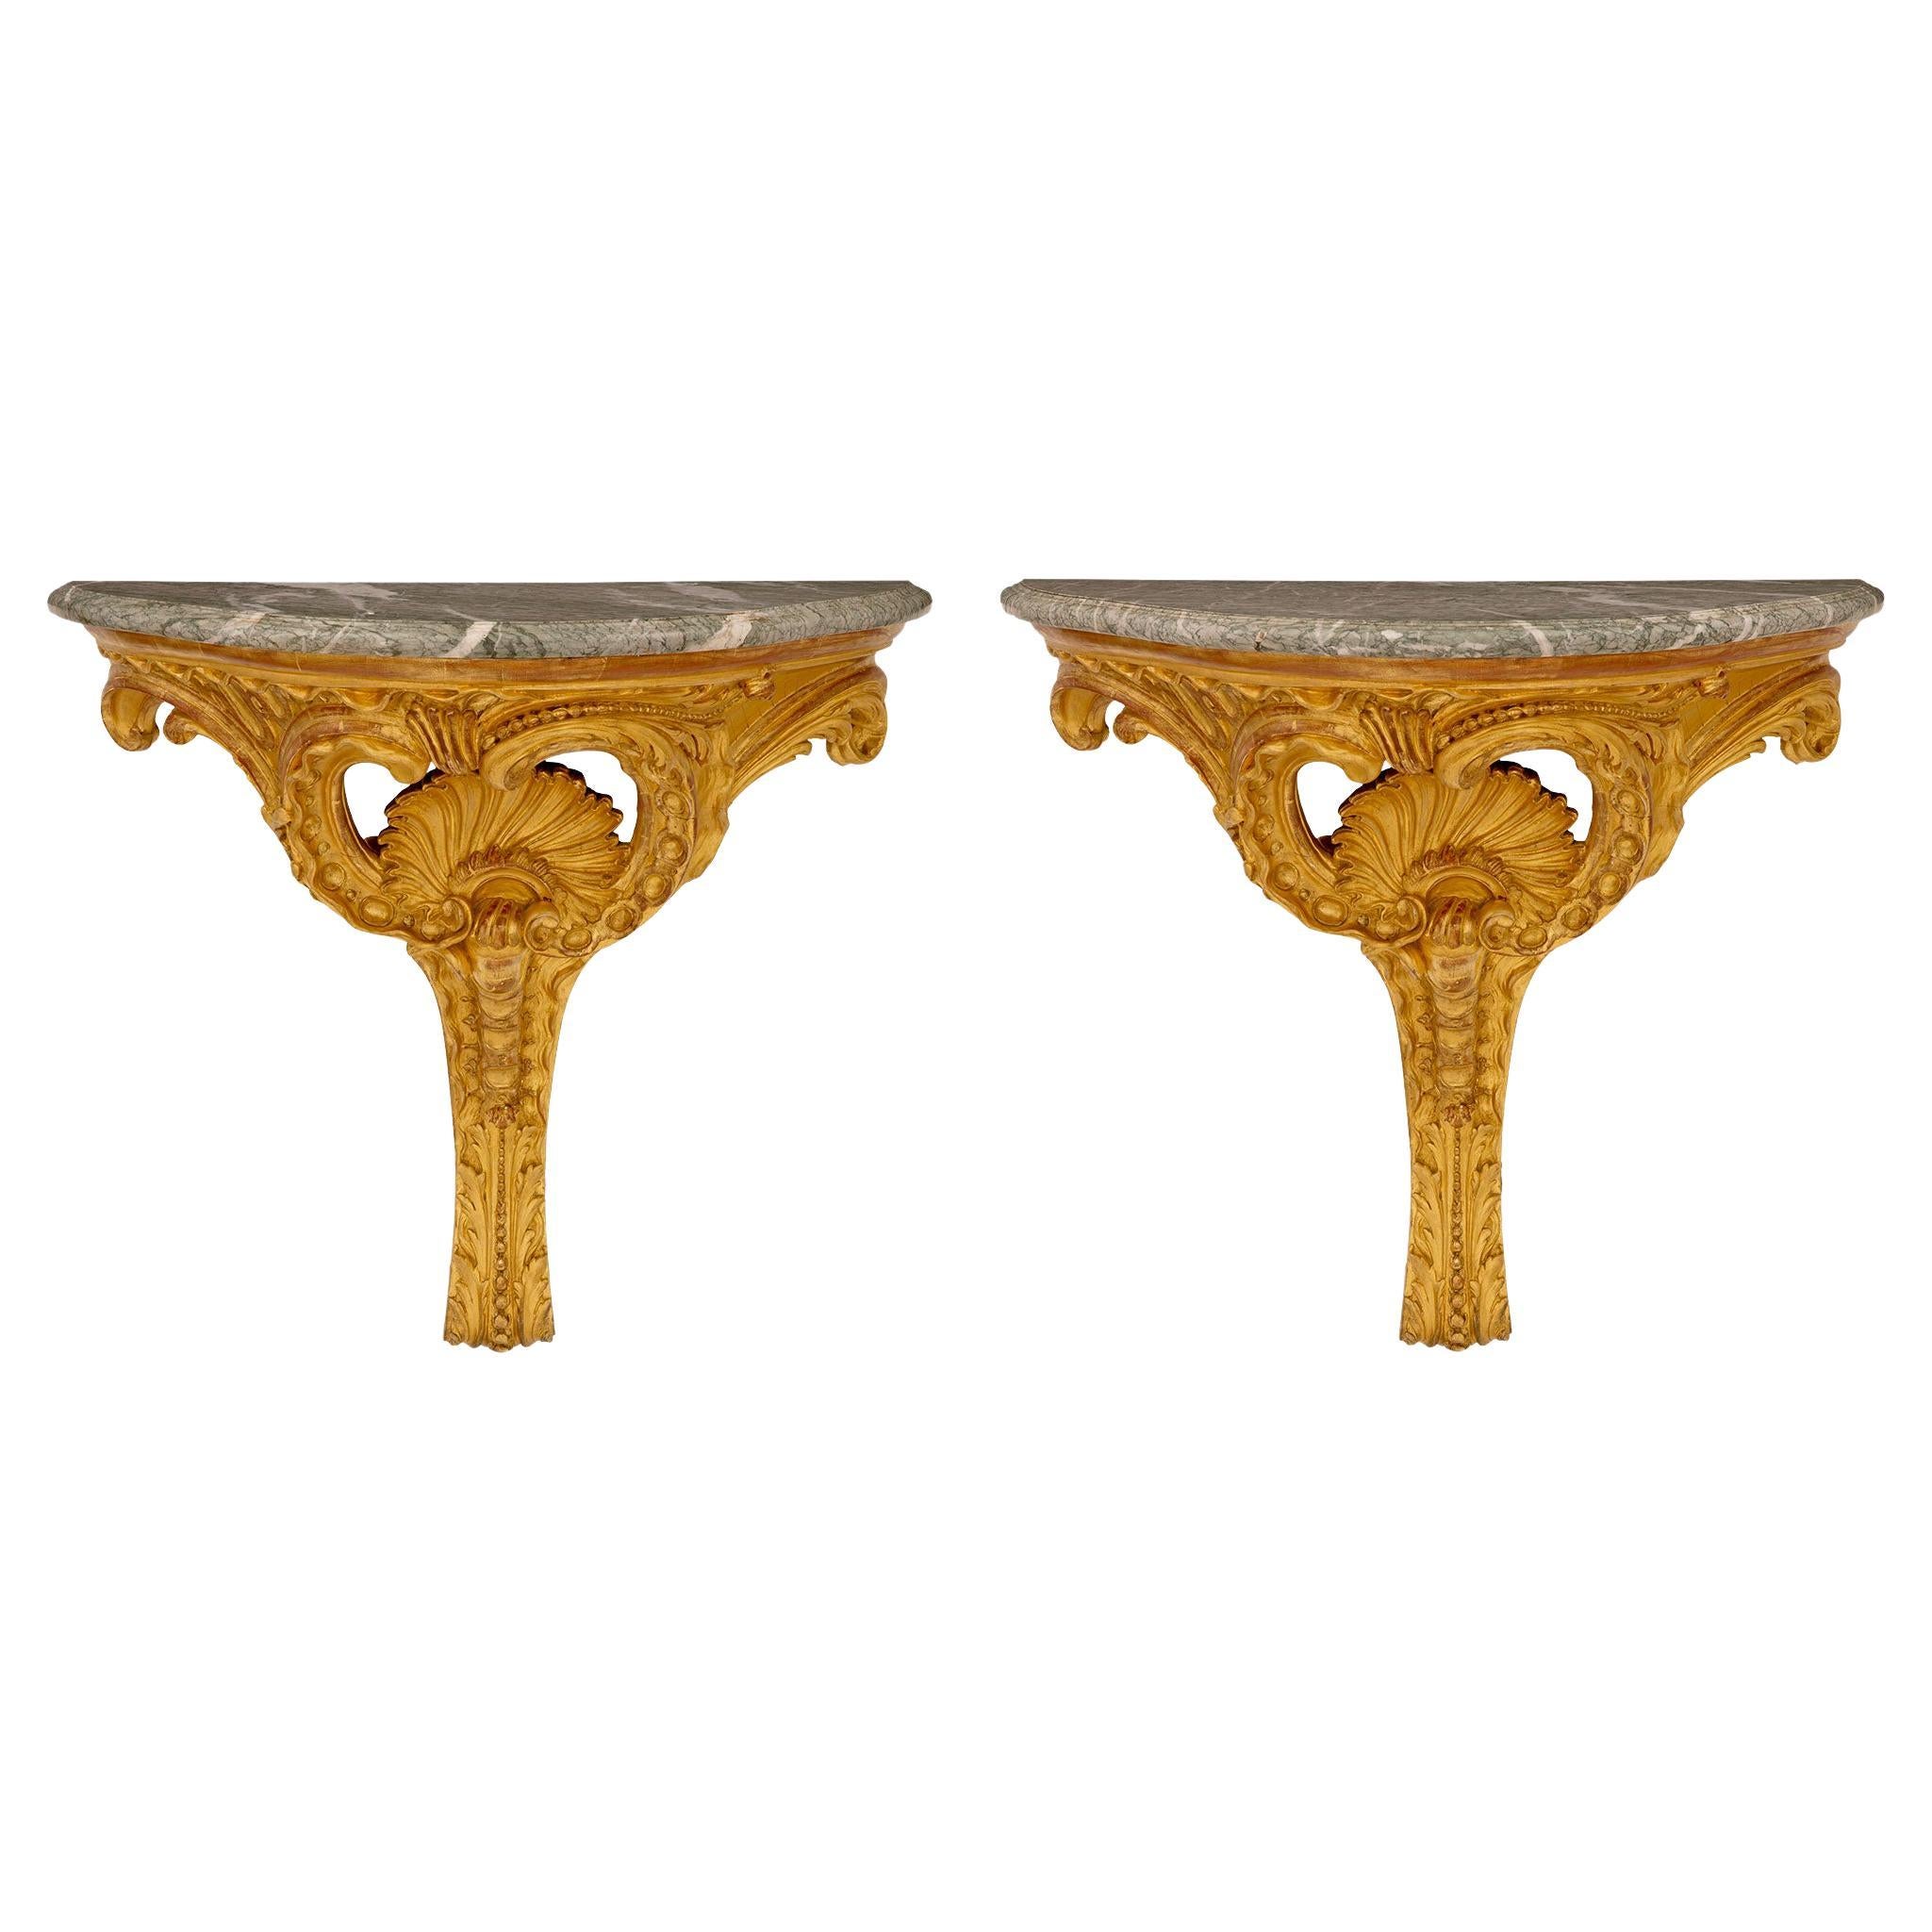 Paire de consoles italiennes du 19ème siècle en bois doré et marbre de style Louis XV